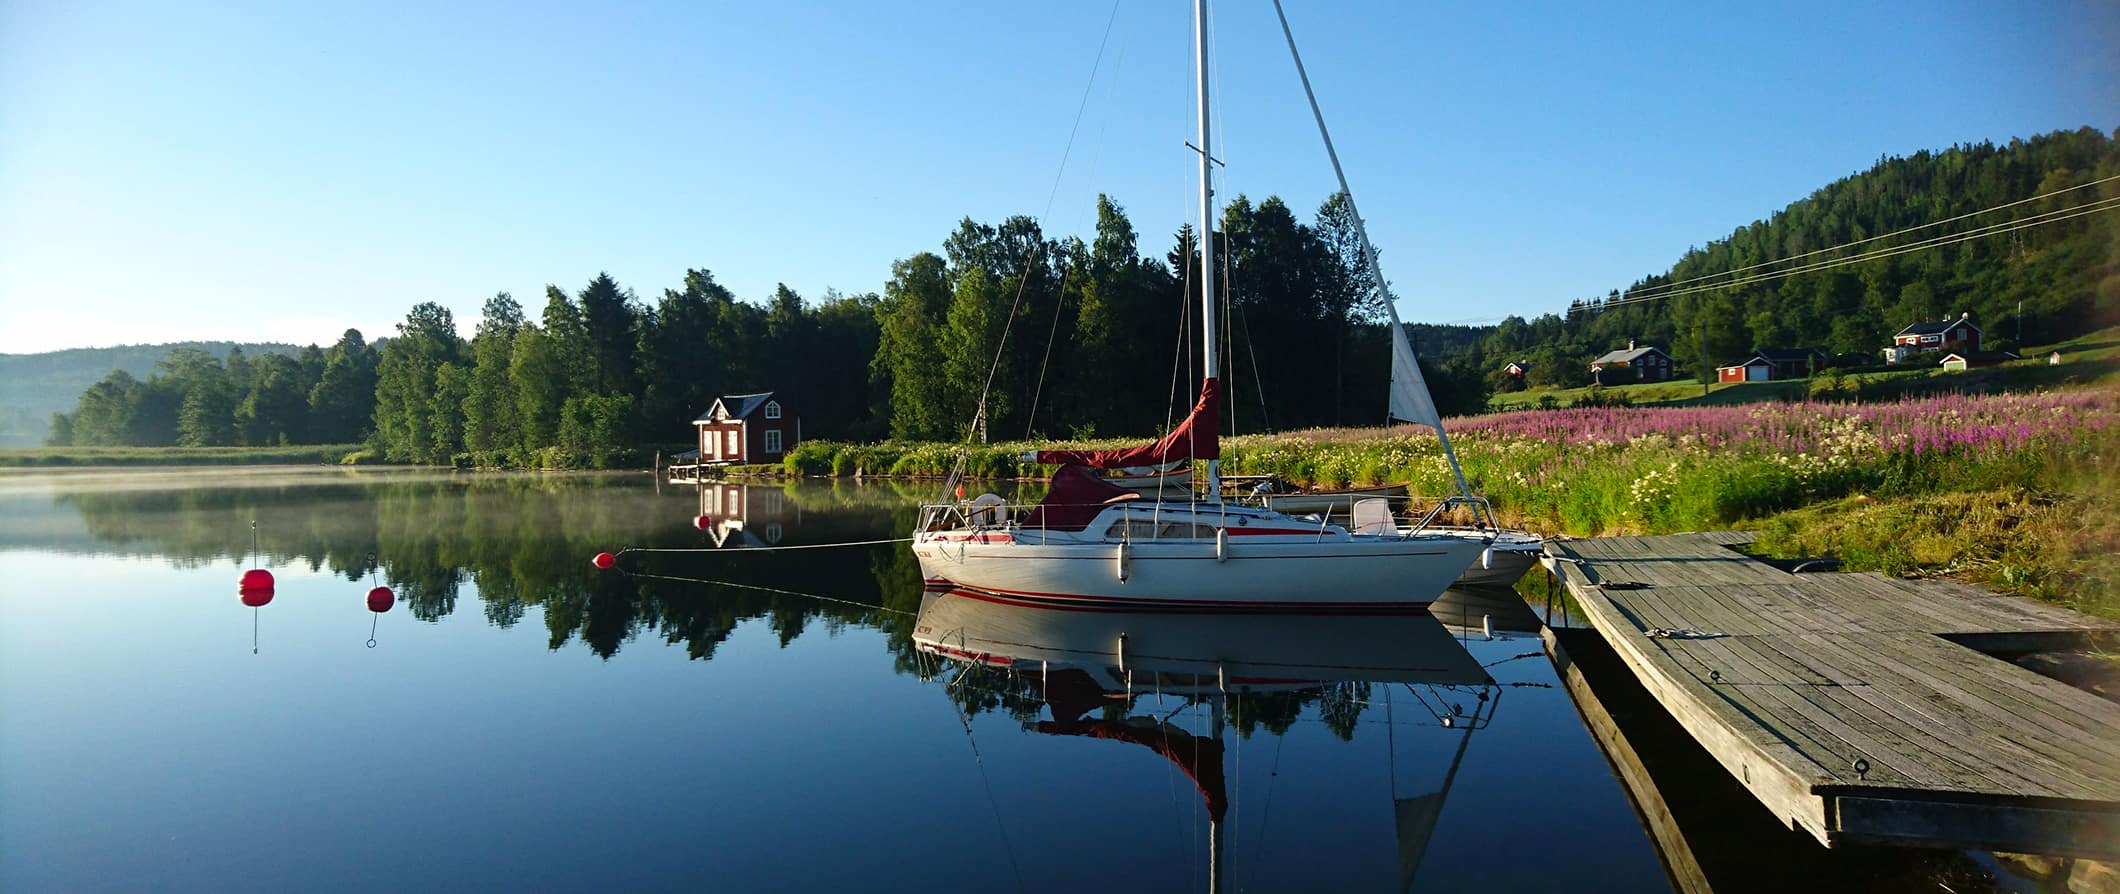 serene lakefront scene in Sweden